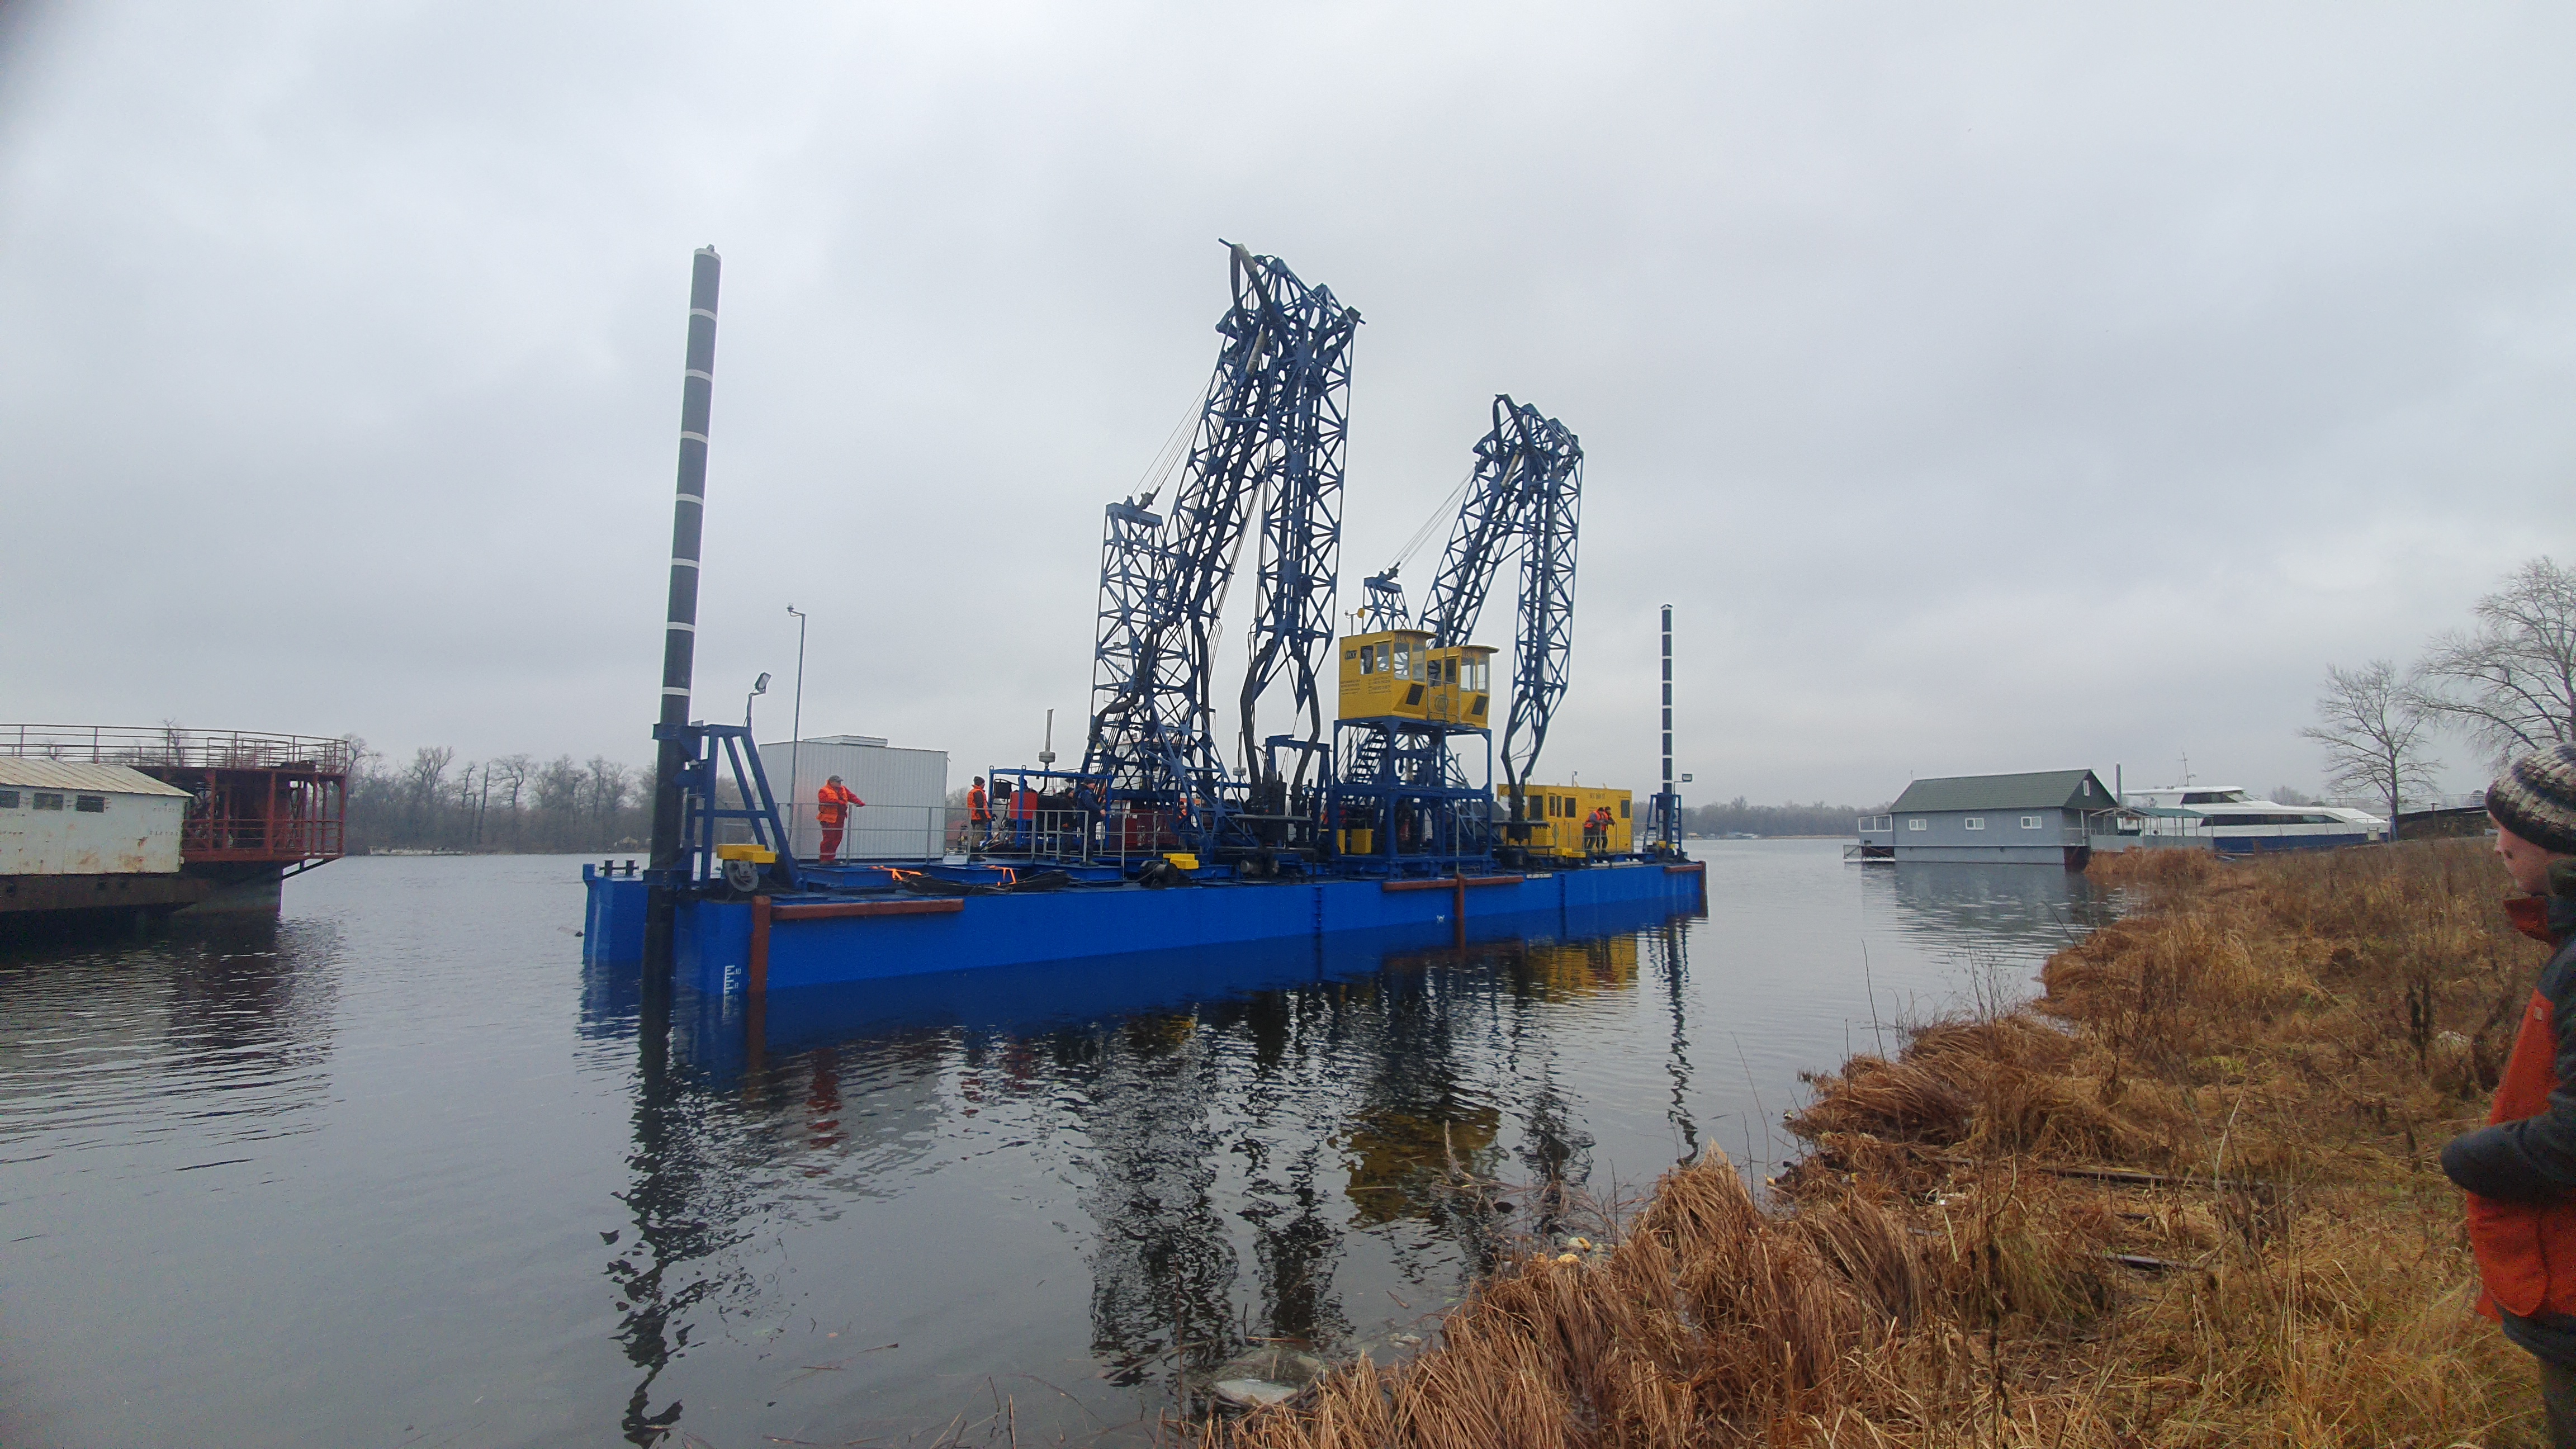 barge unloading dredger HCC GV 1600, Ukraine, VVV-Spetstekhnika